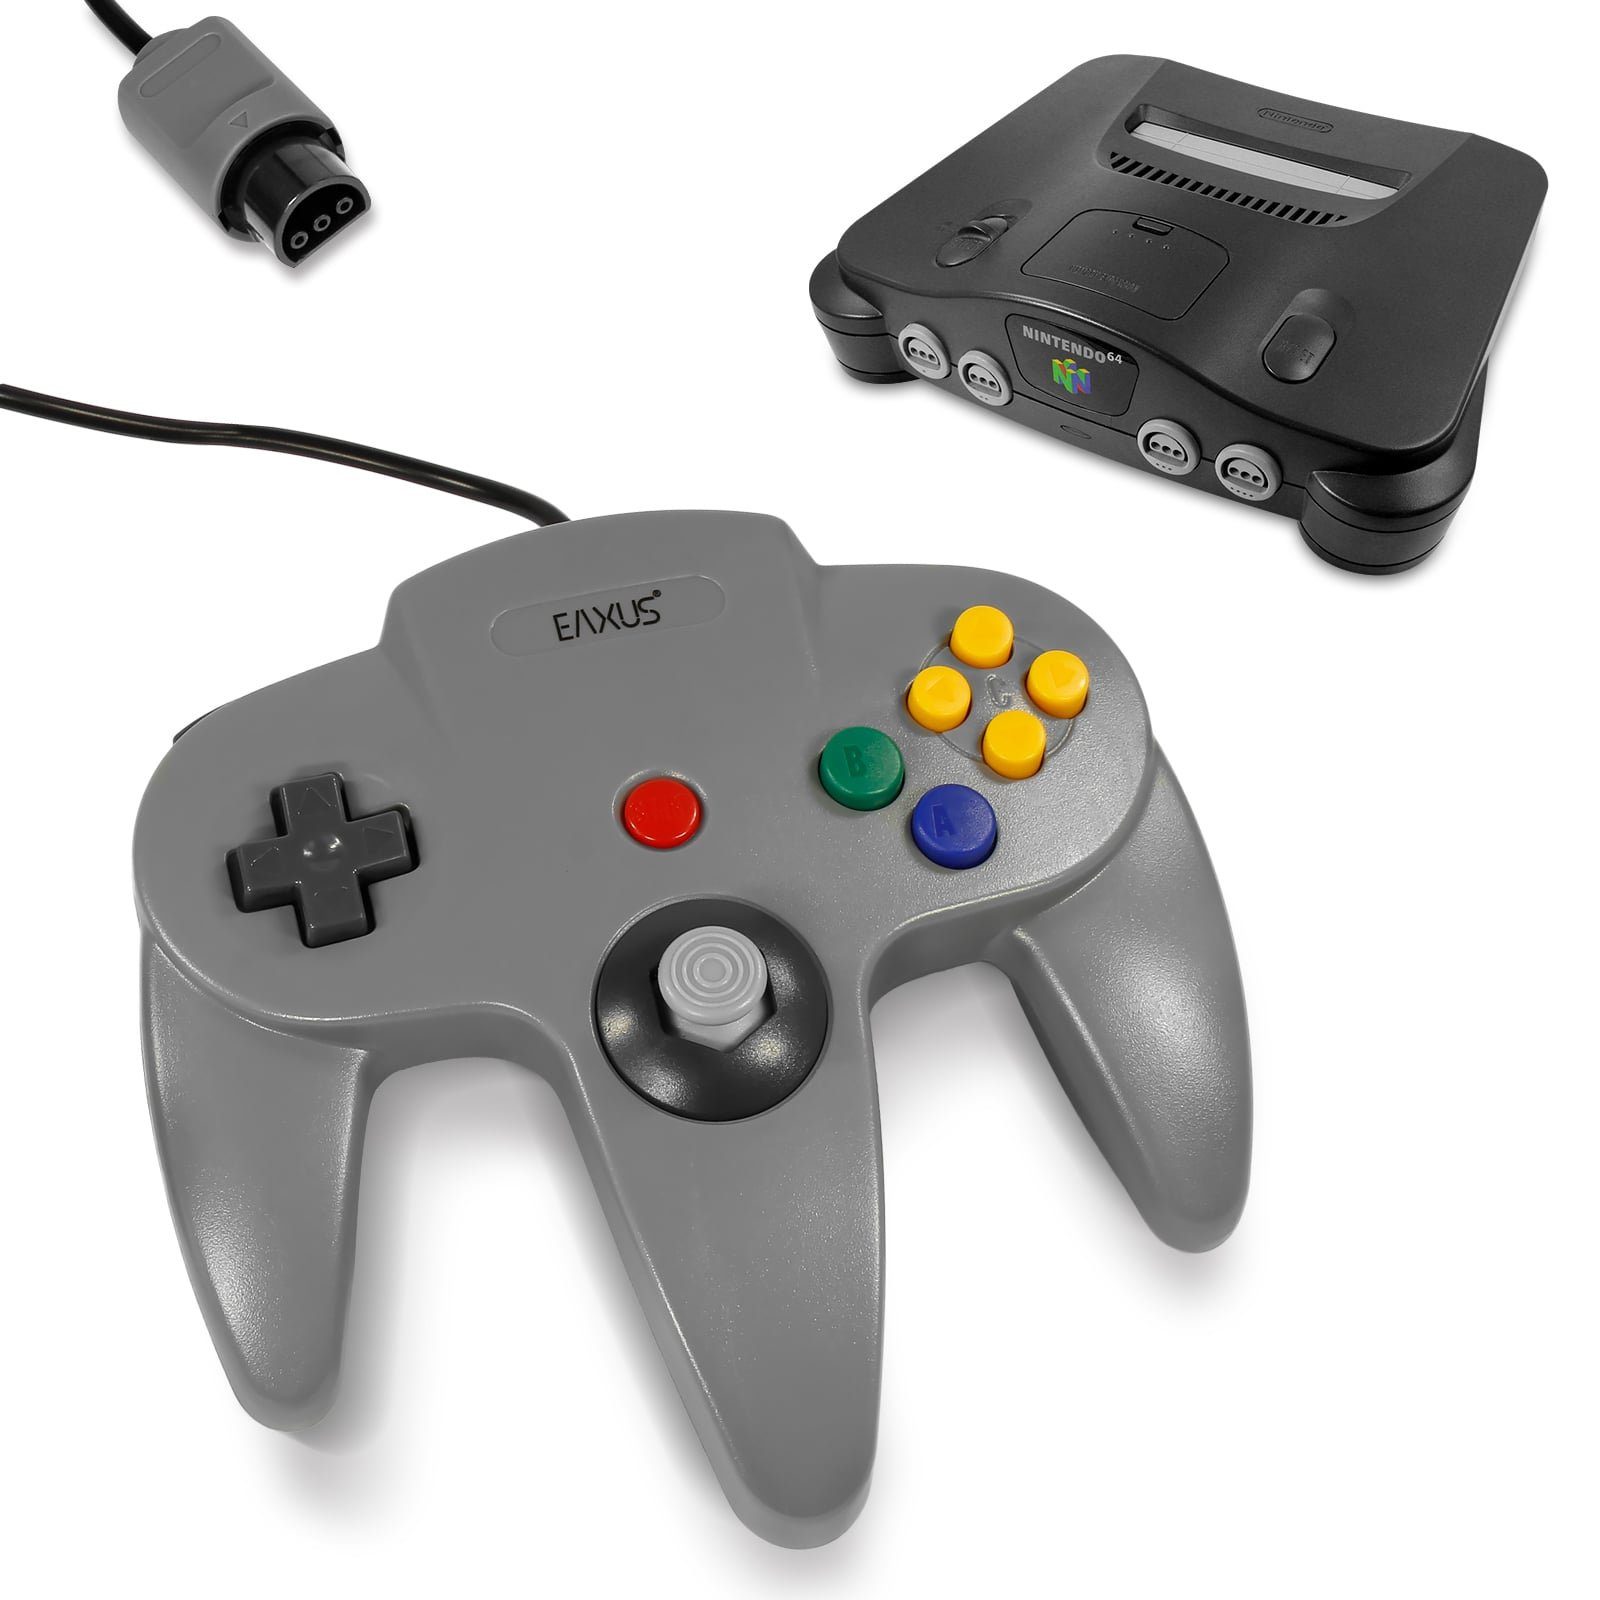 EAXUS Gamepad für Controller (1 für 64 in Nintendo St., N64) Schwarz/Grau